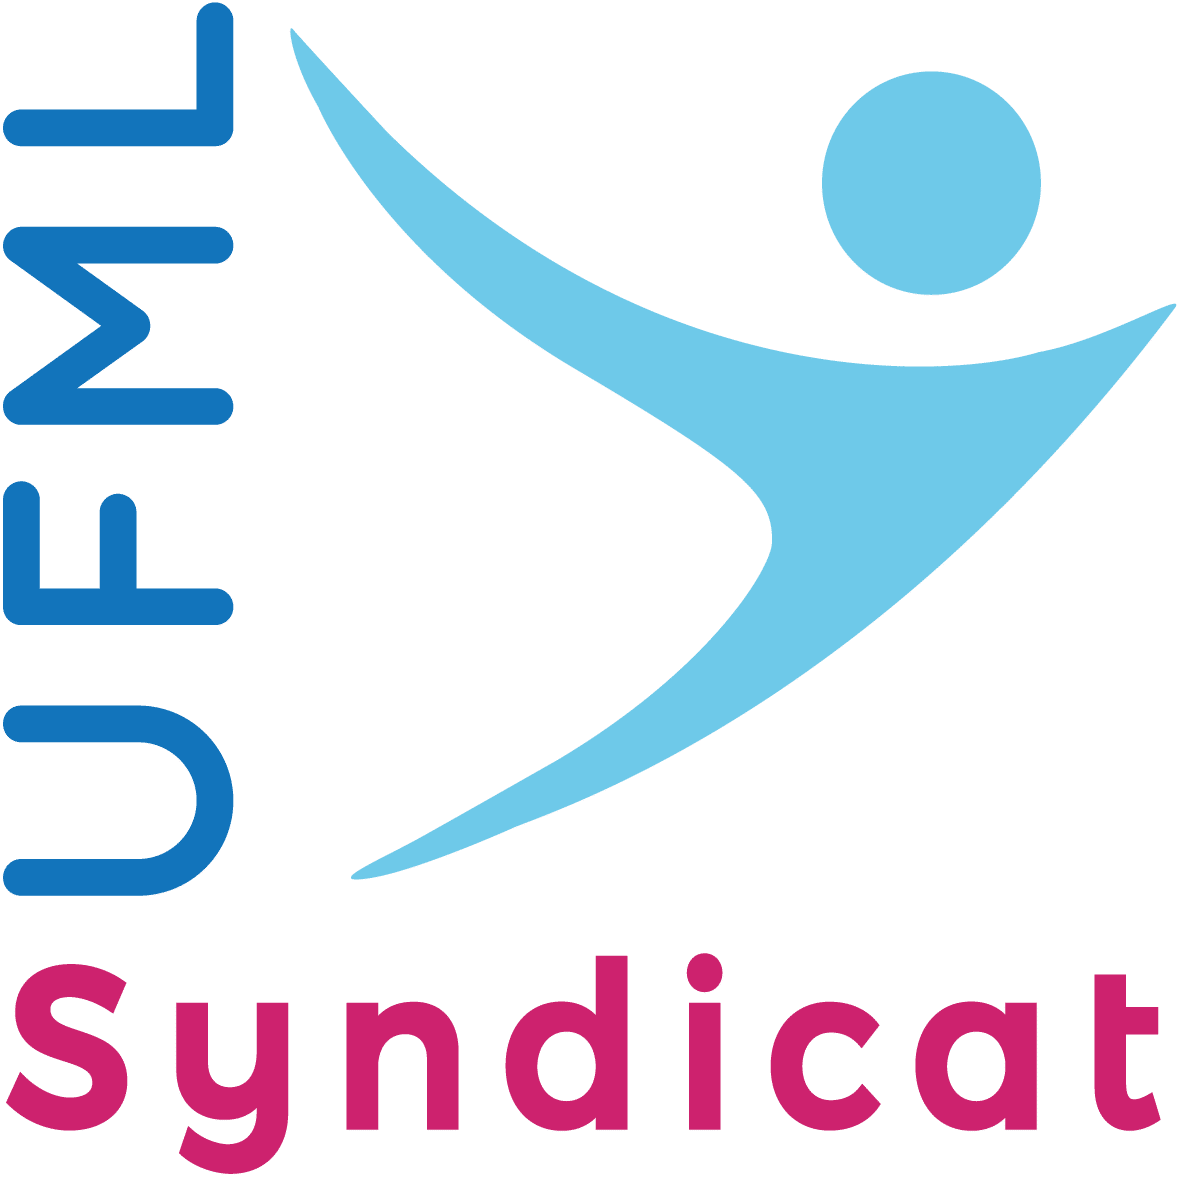 L’UFML-Syndicat appelle la profession médicale à se préparer à un conflit majeur. Communiqué de presse UFML-Syndicat, le 21 mars 2019